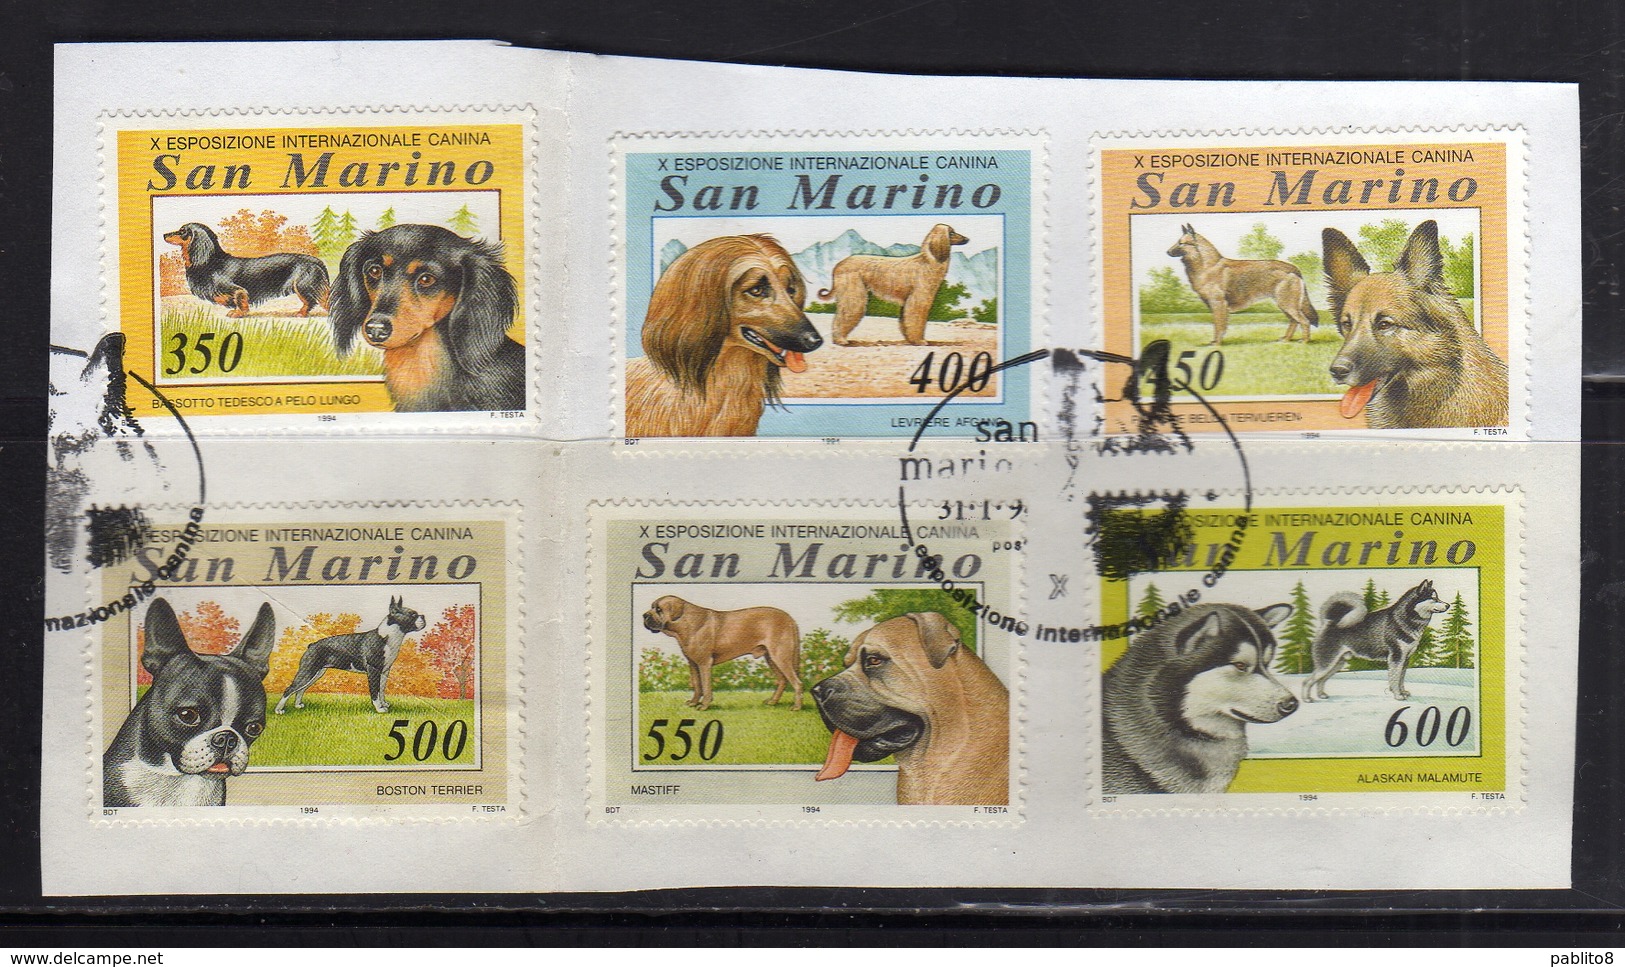 REPUBBLICA DI SAN MARINO 1994 ESPOSIZIONE CANINA CANI DOGS SERIE COMPLETA COMPLETE SET USATA USED OBLITERE' - Used Stamps